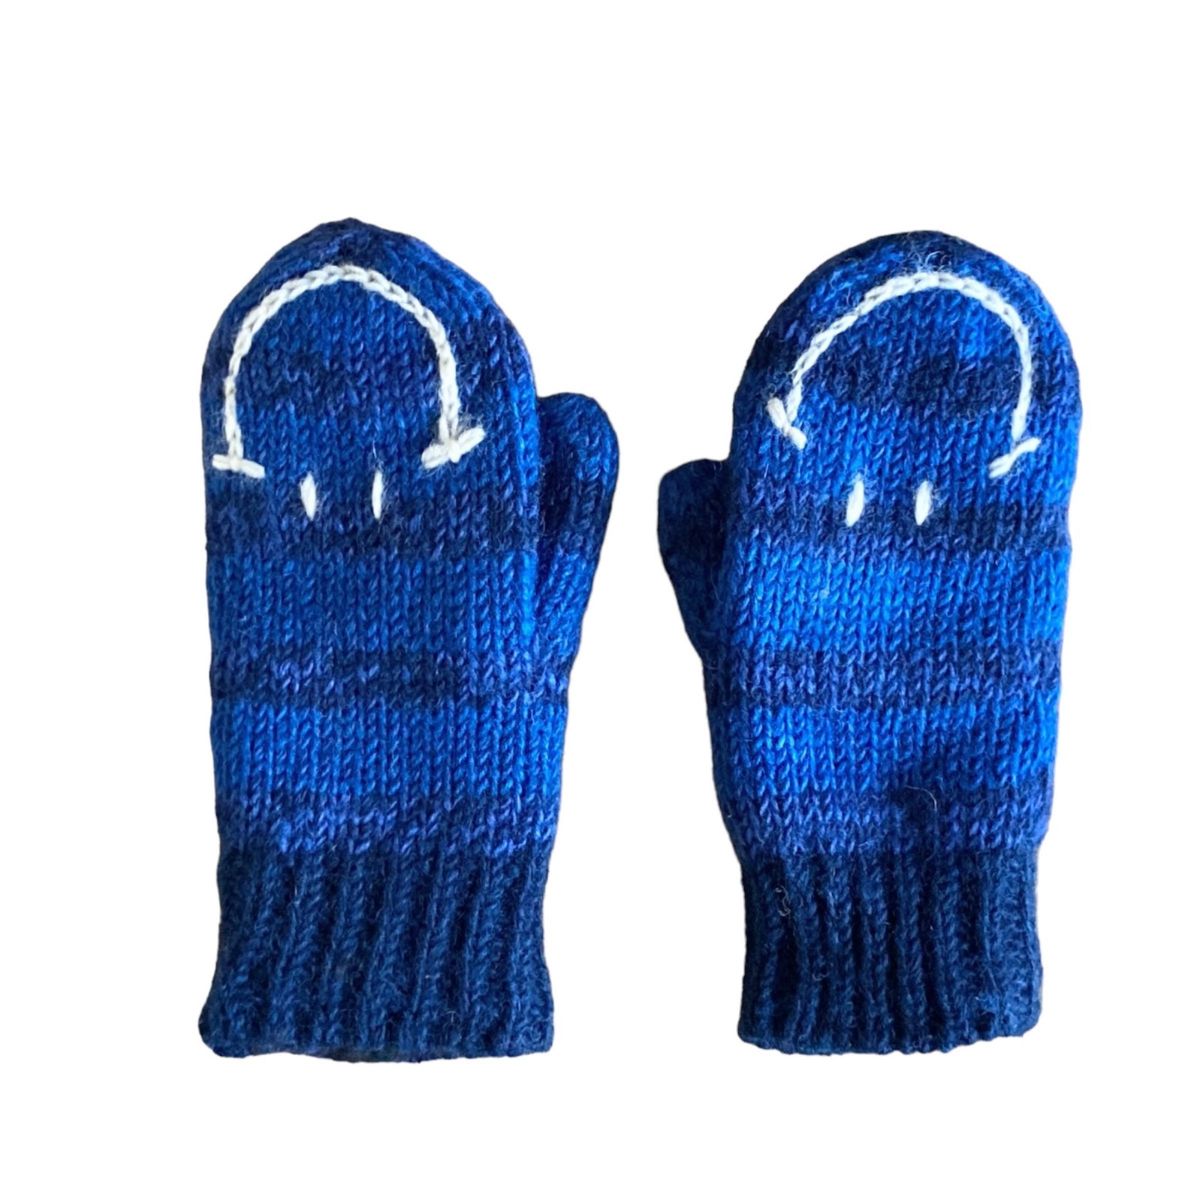 ①ミトン手袋 ニット 手編み グローブ 防寒対策 保温 スマイリー スマイル ニコちゃん ネイビー エスニック ネパール製